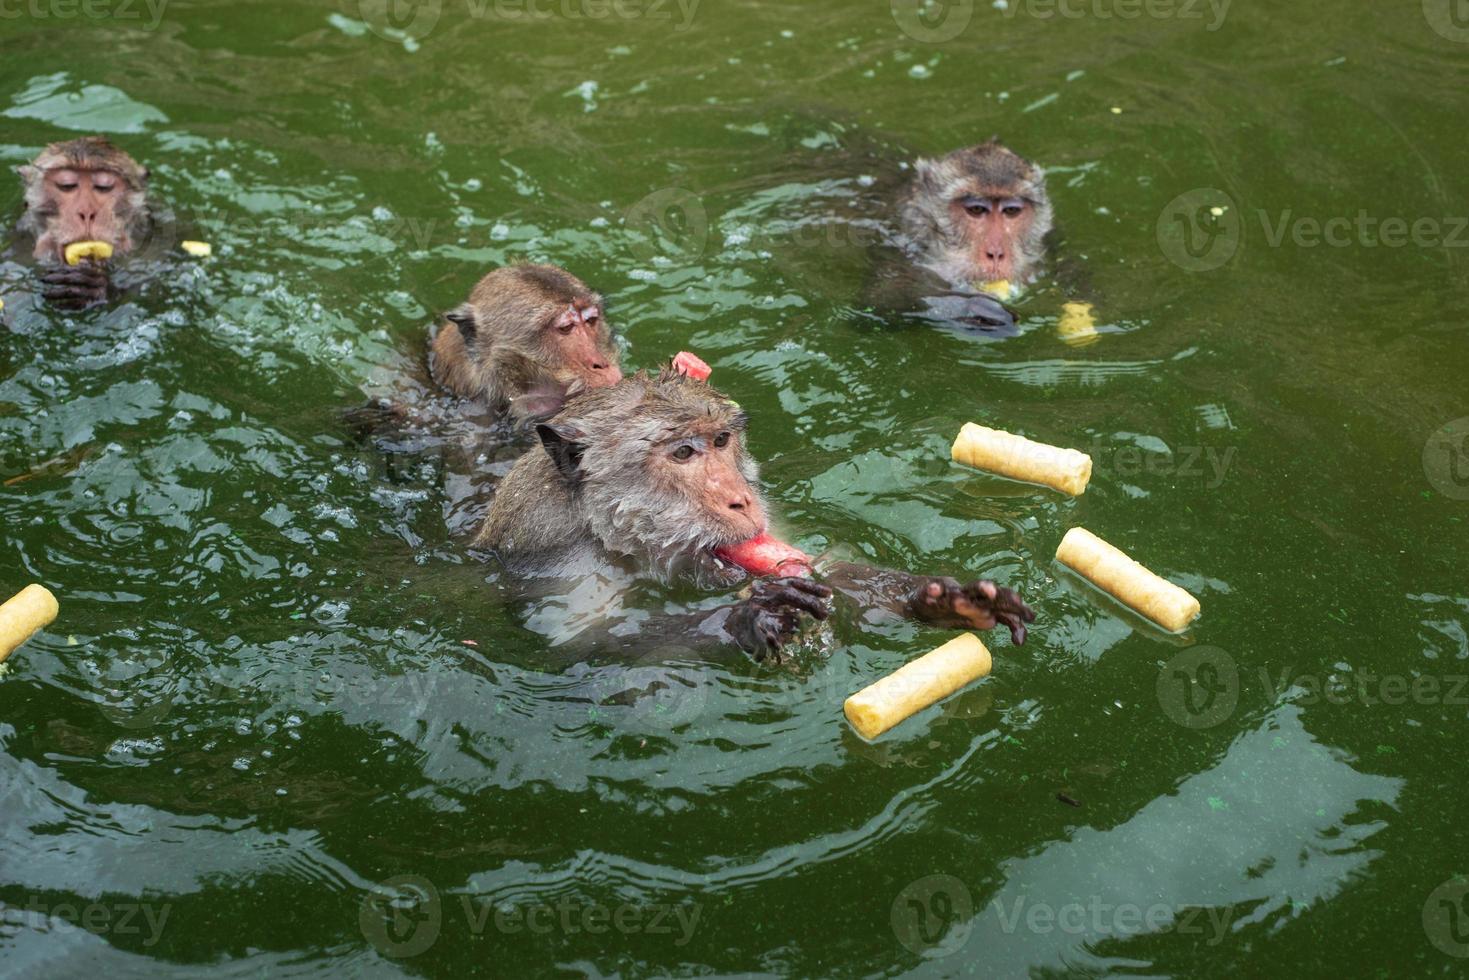 apor simmar och äter mat från turister i reservoaren. foto